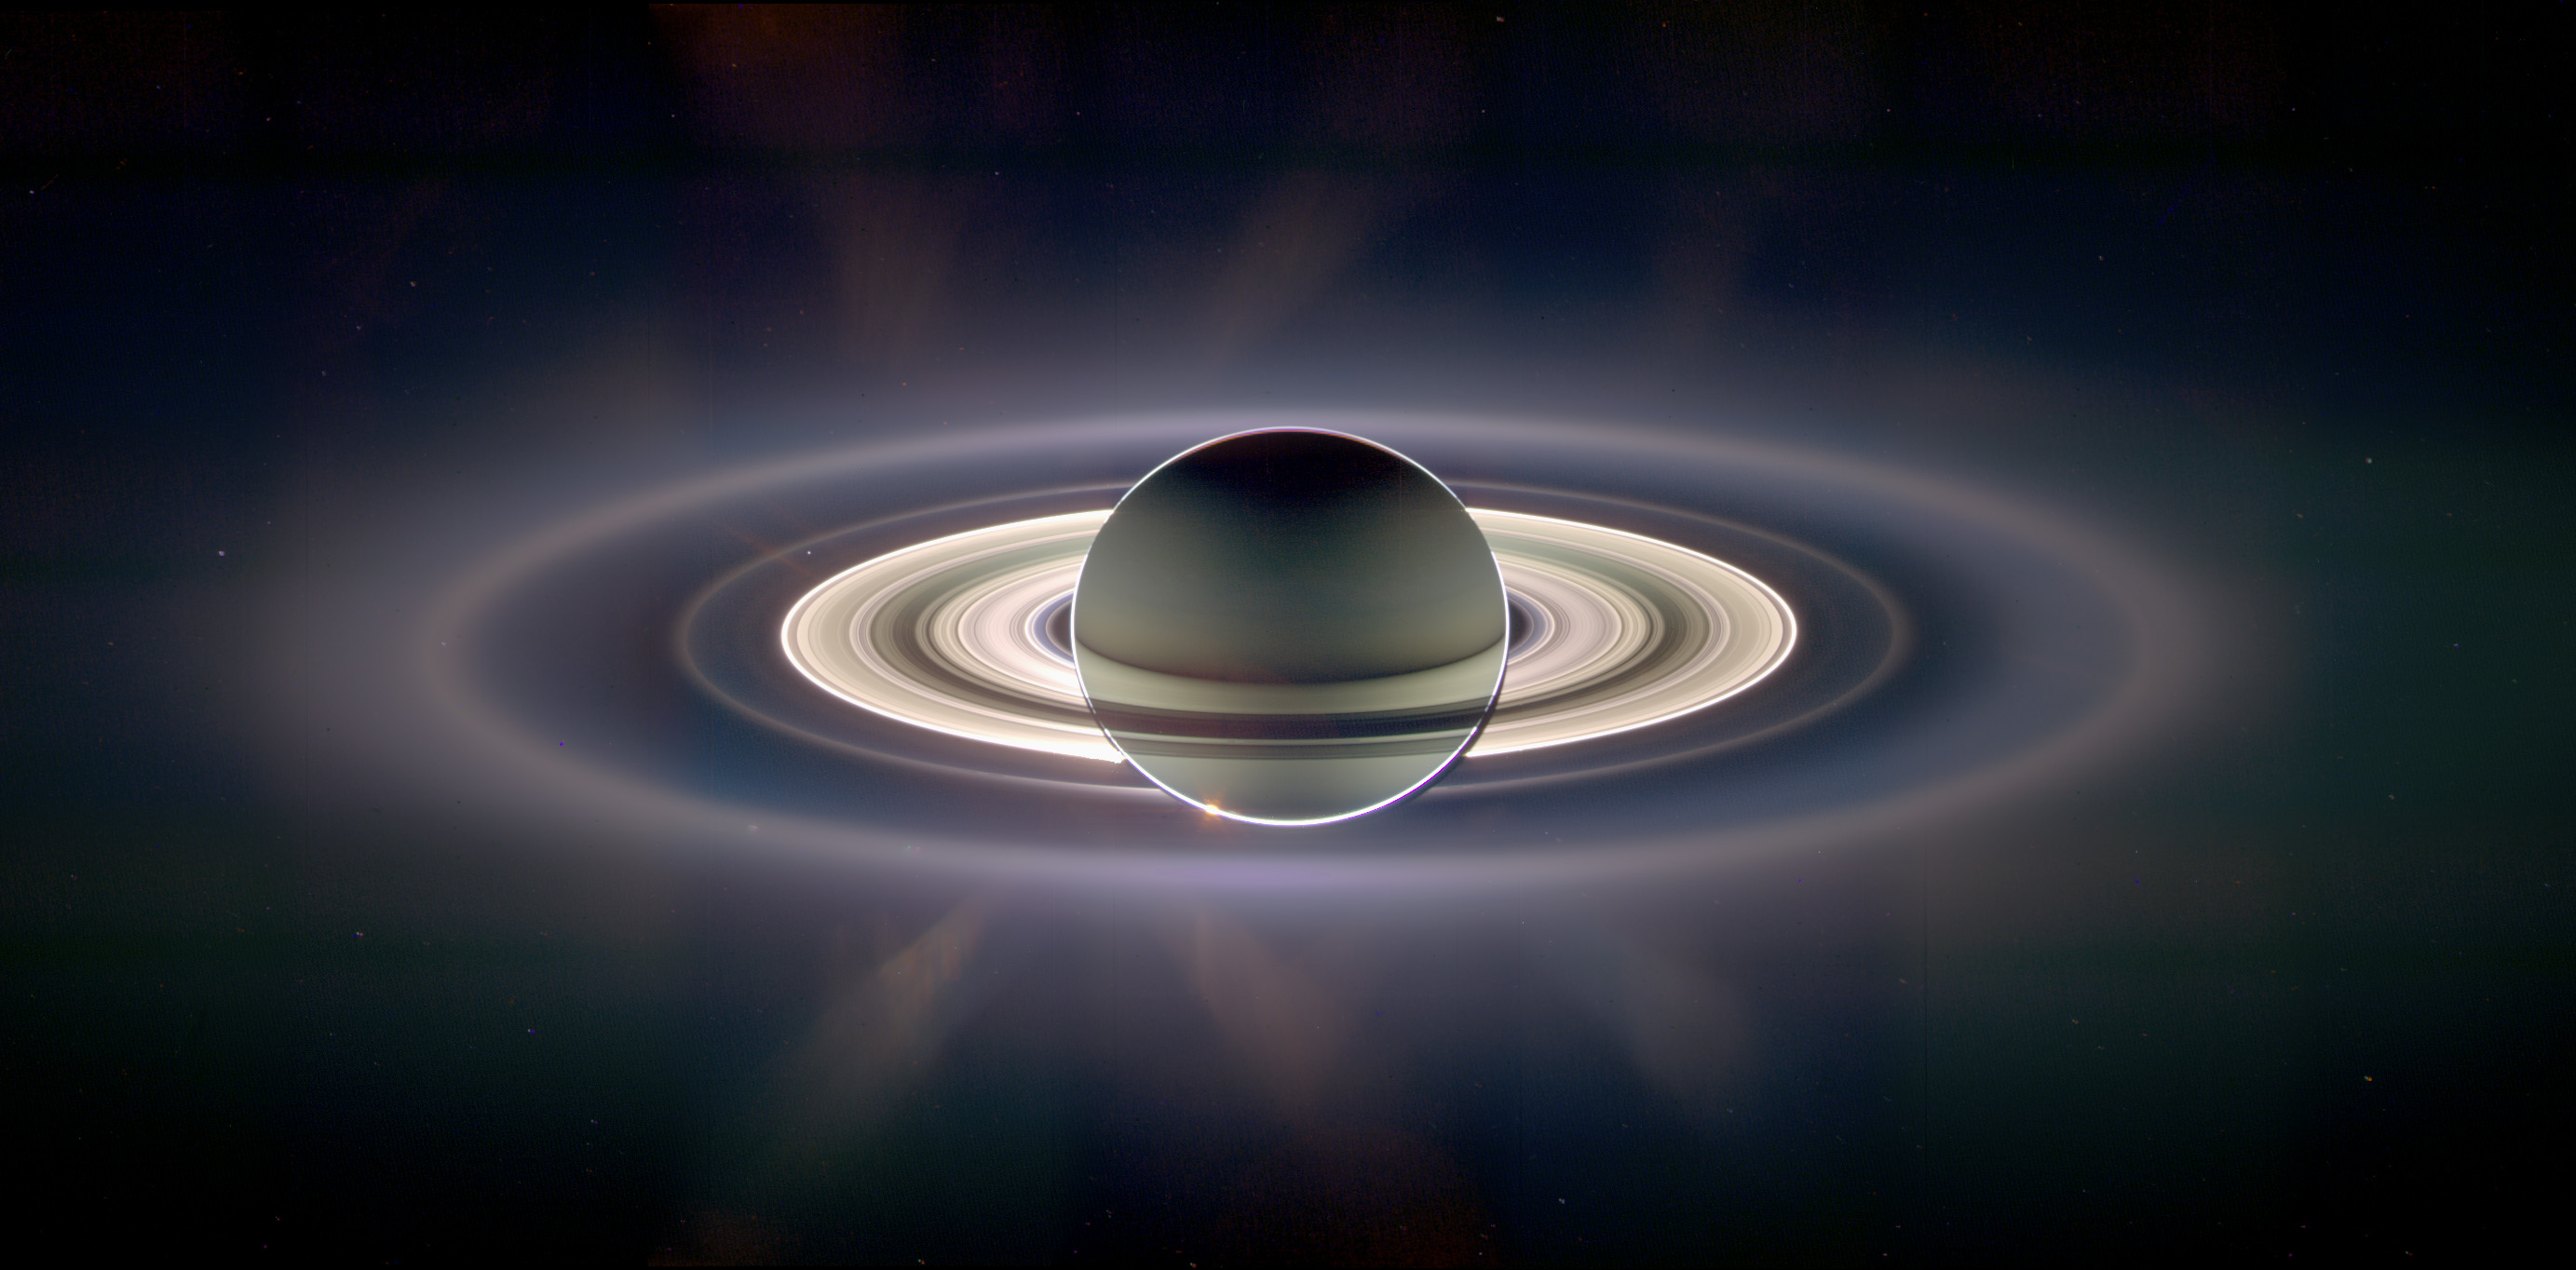 Saturn in Eclipse